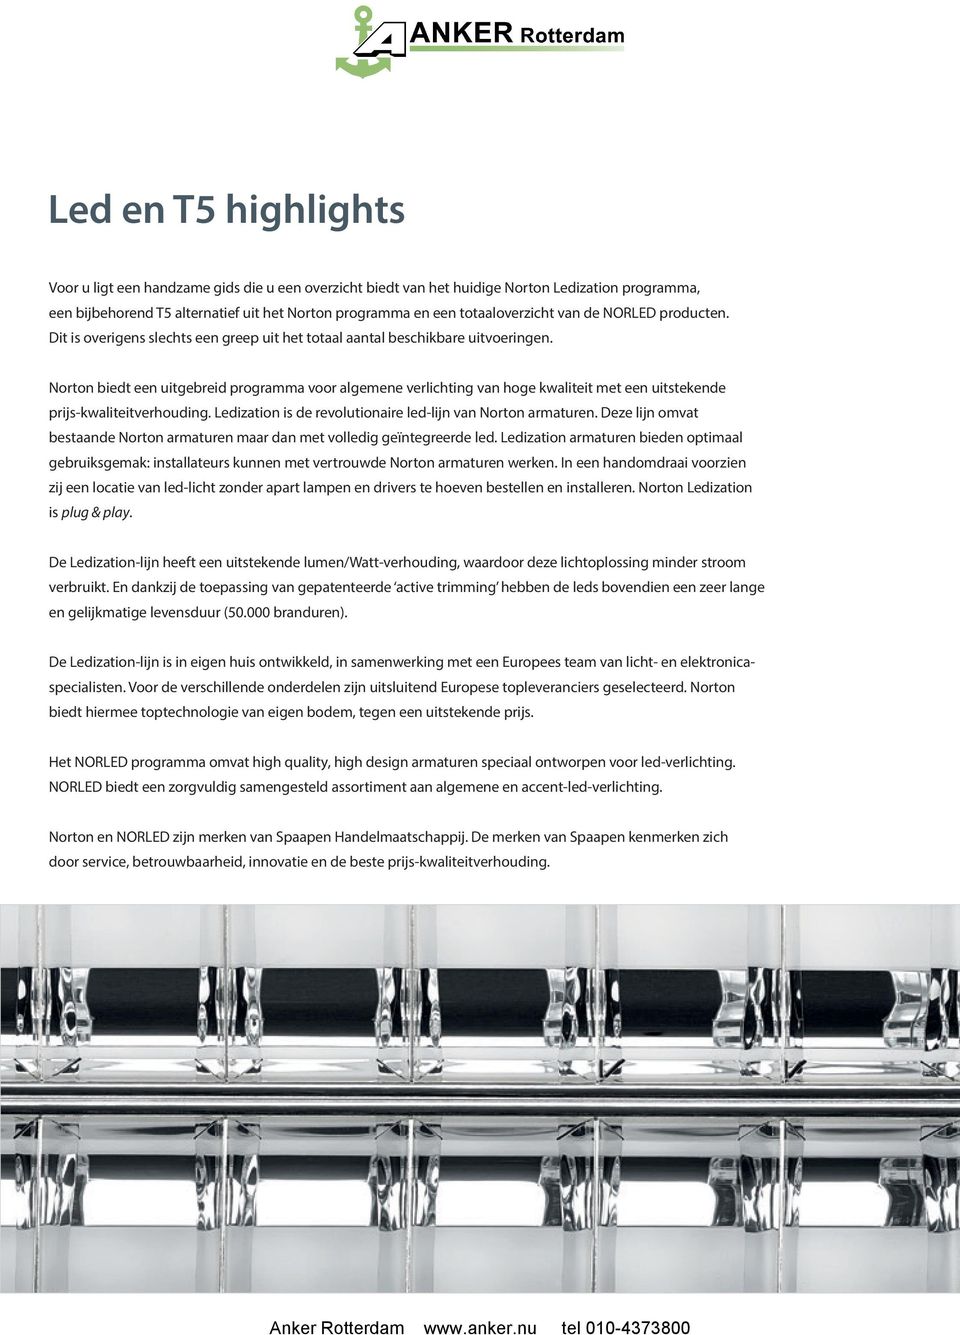 Norton biedt een uitgebreid programma voor algemene verlichting van hoge kwaliteit met een uitstekende prijs-kwaliteitverhouding. Ledization is de revolutionaire led-lijn van Norton armaturen.